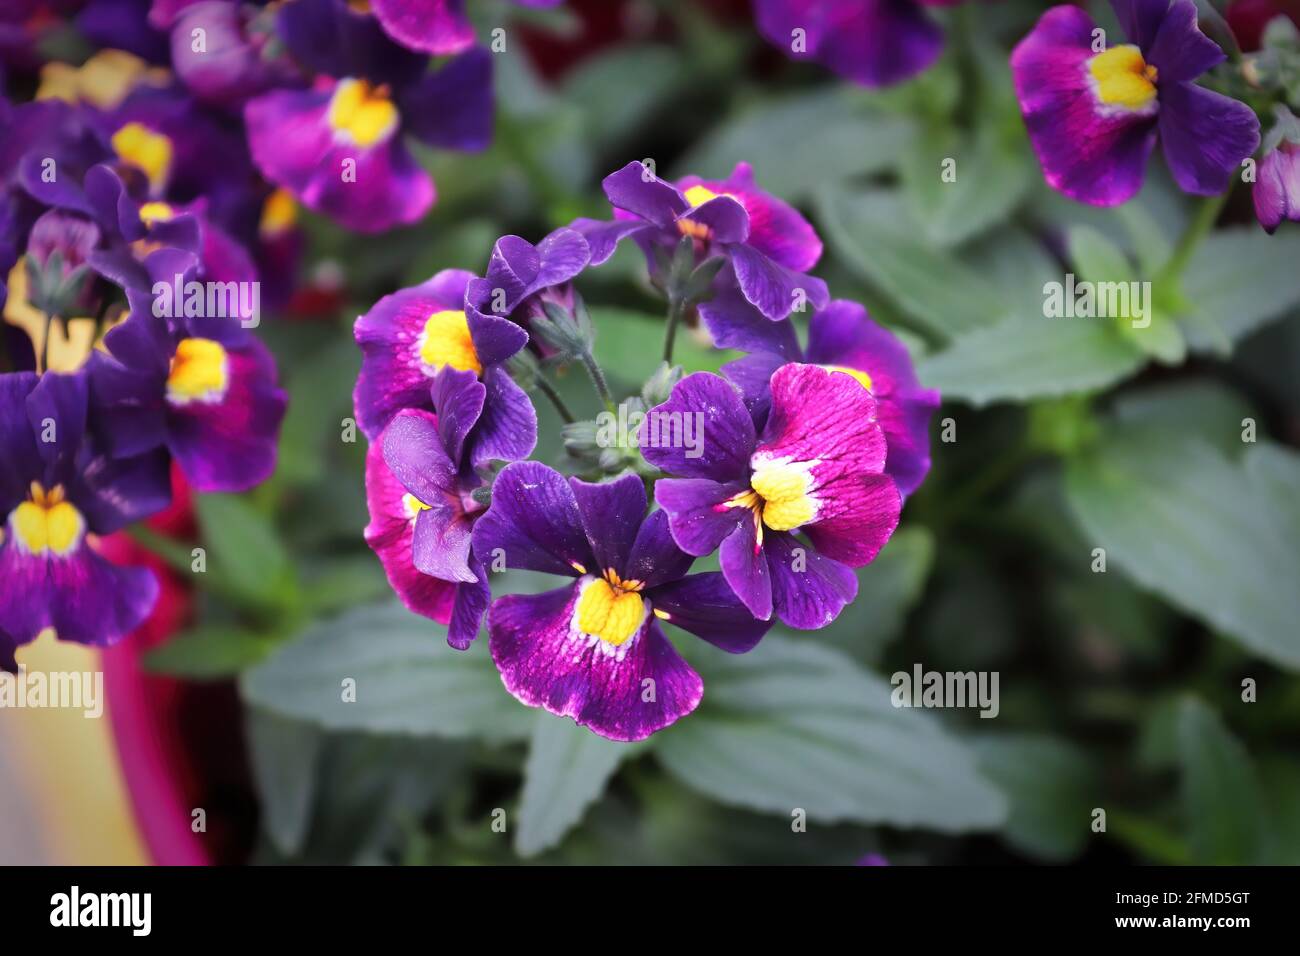 Nahaufnahme einer purpurnen Nemesia-Pflanze in einem Topf Stockfoto